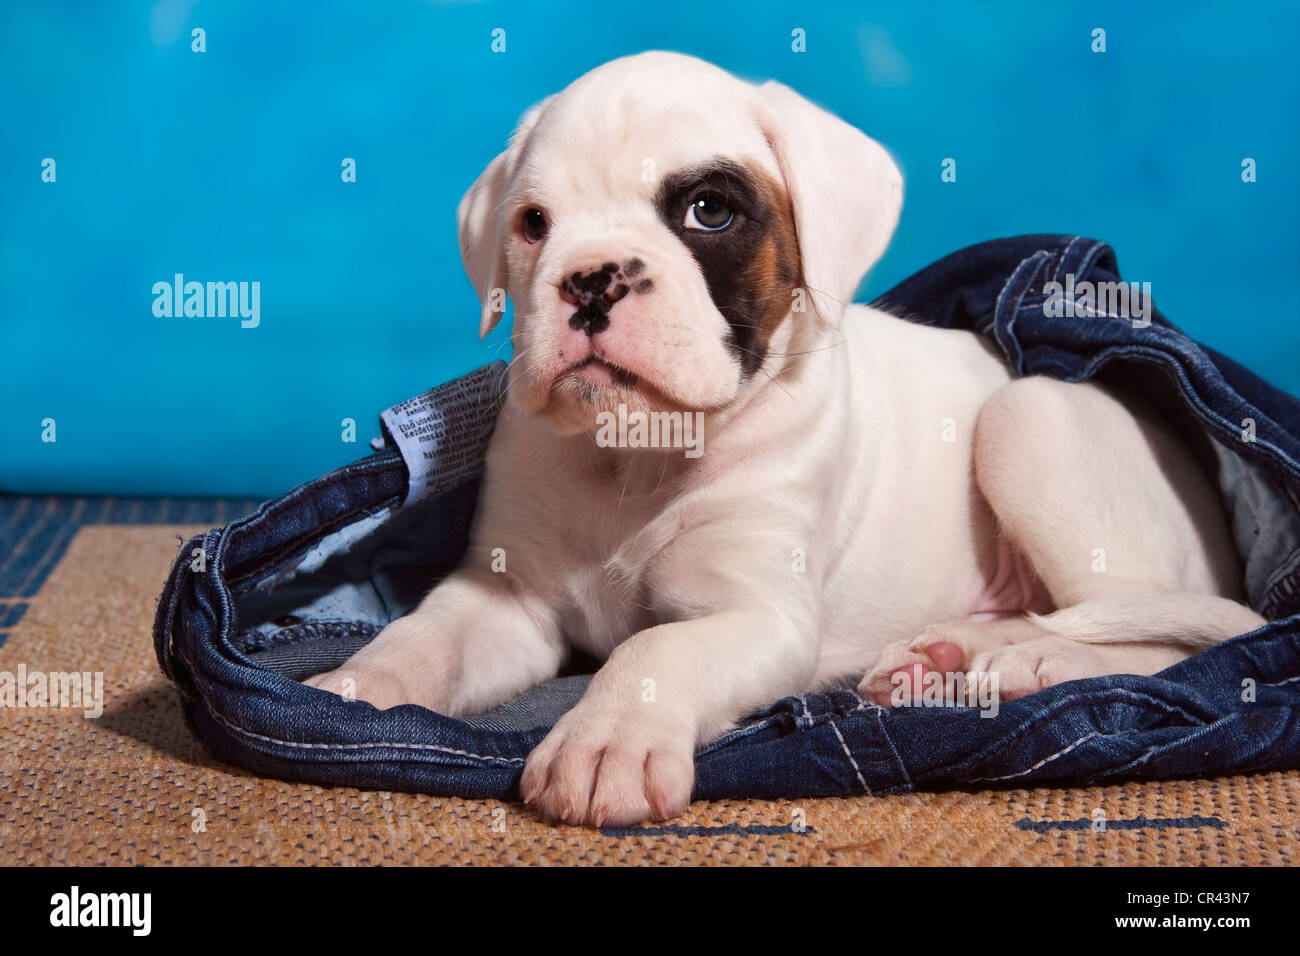 Boxer cucciolo dei jeans Foto Stock